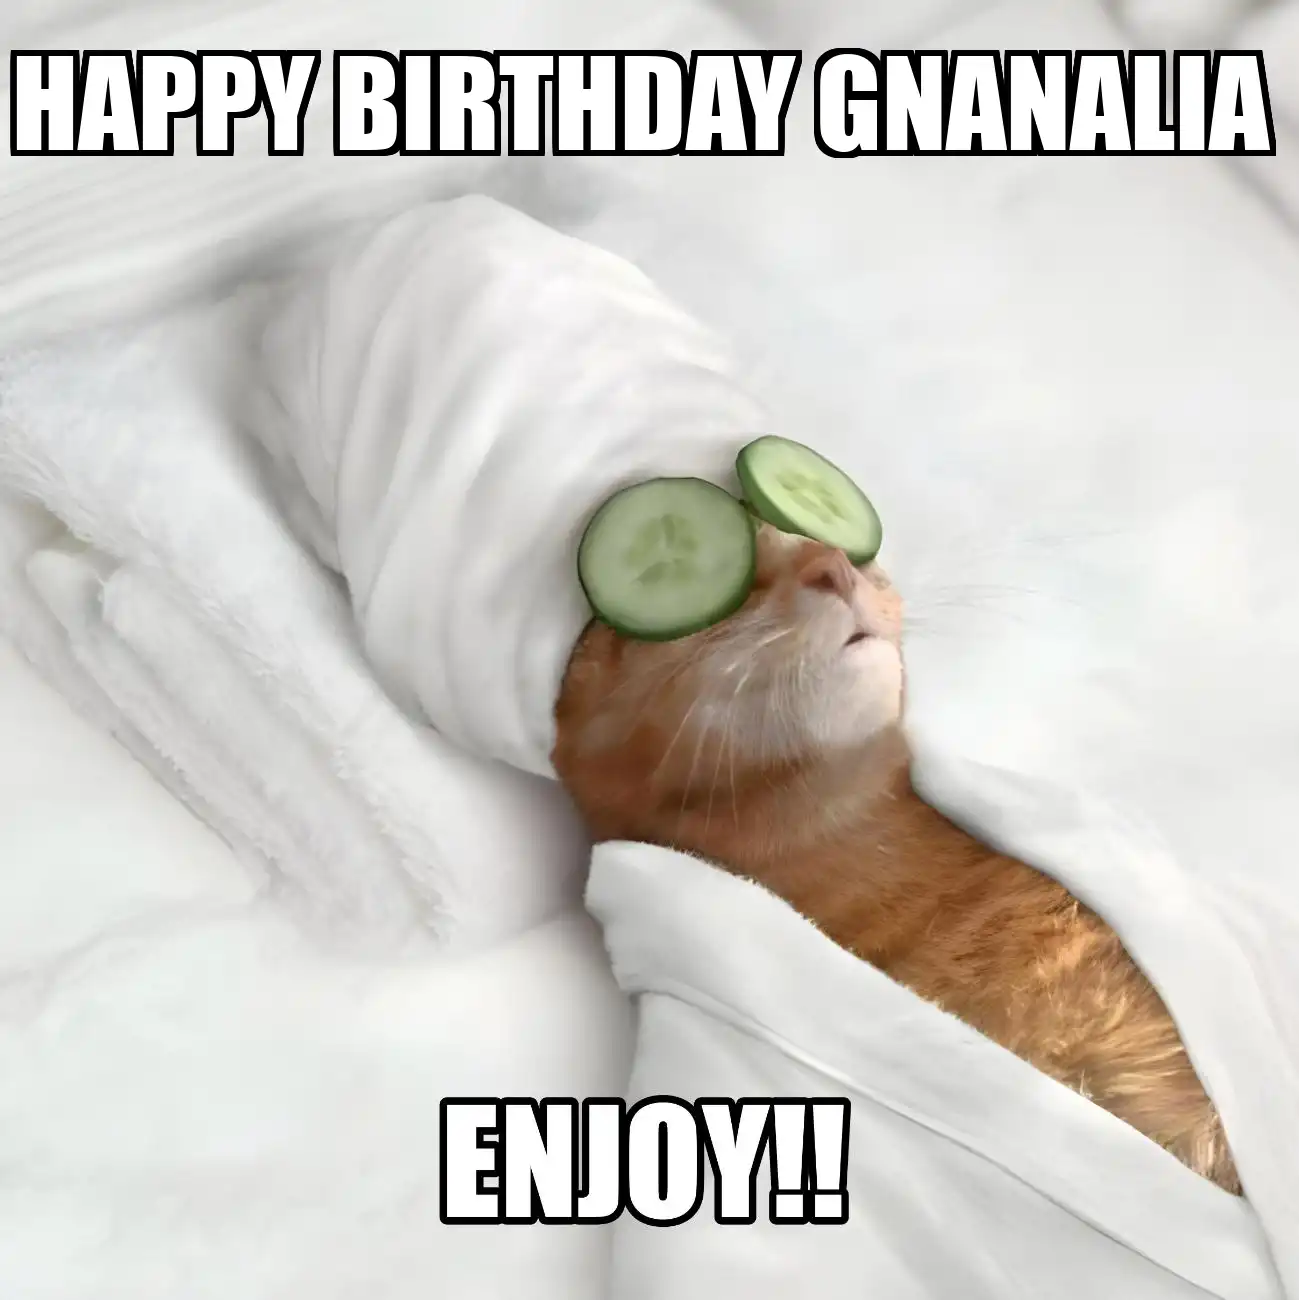 Happy Birthday Gnanalia Enjoy Cat Meme